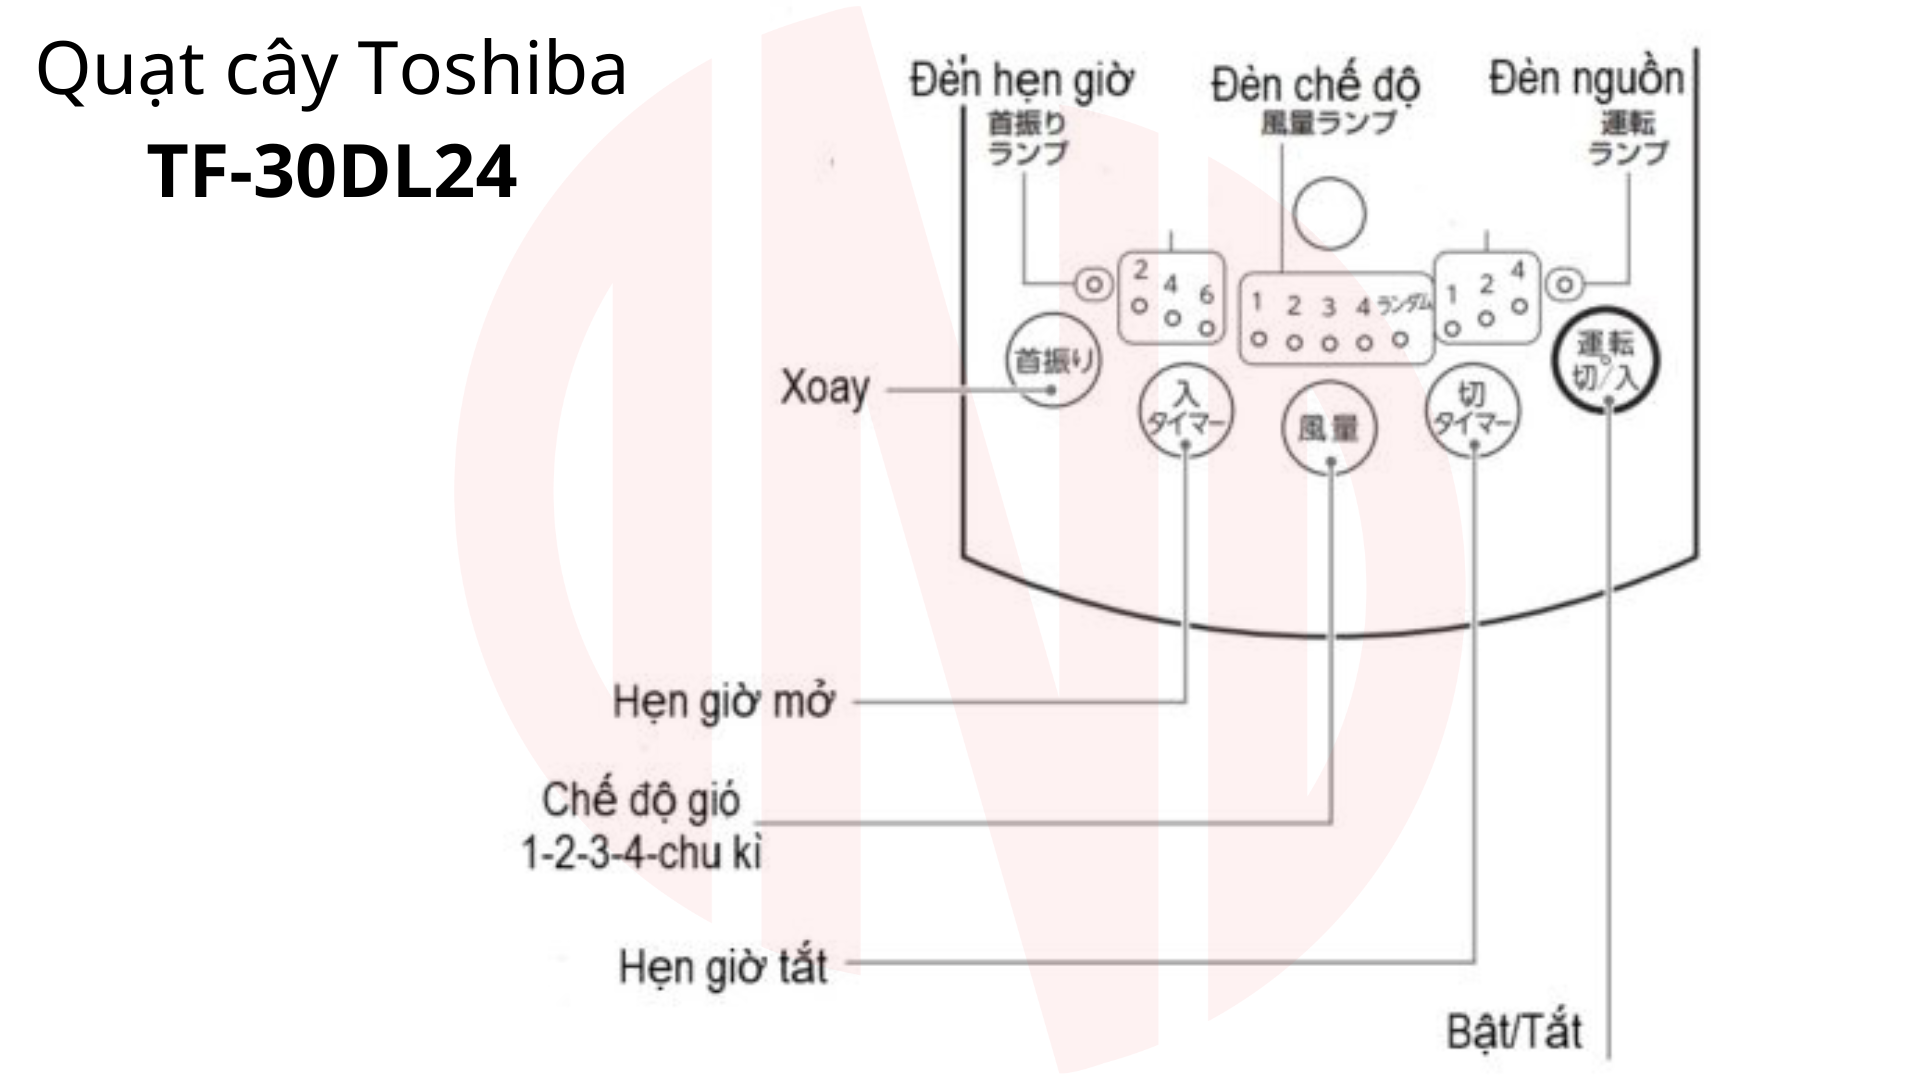 Hướng dẫn sử dụng Quạt cây Toshiba TF-30DL24 